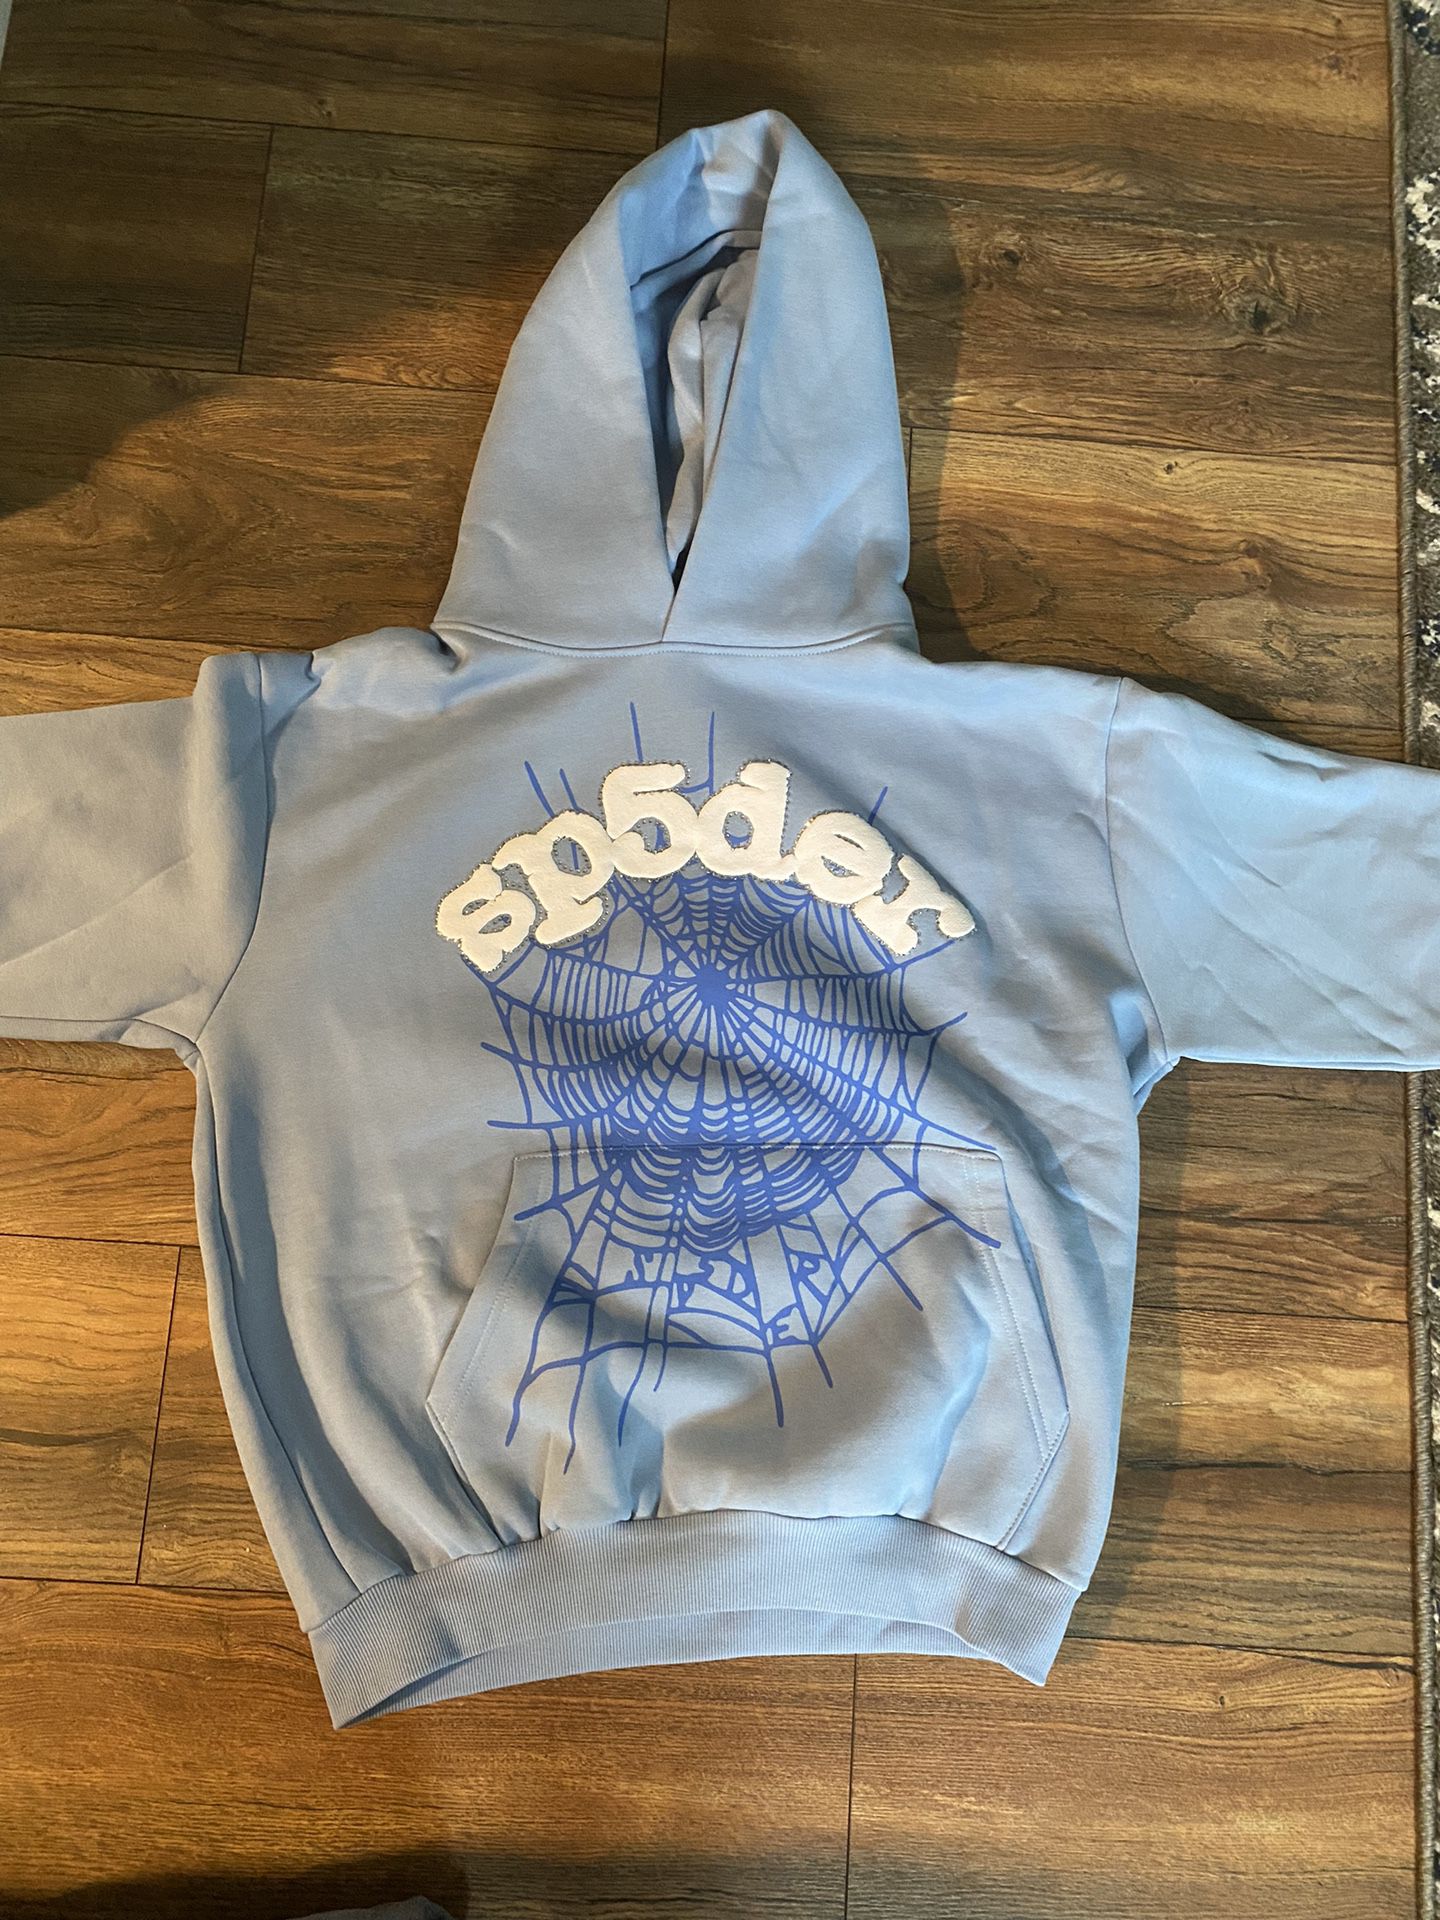 1:1 Sp5der hoodie 